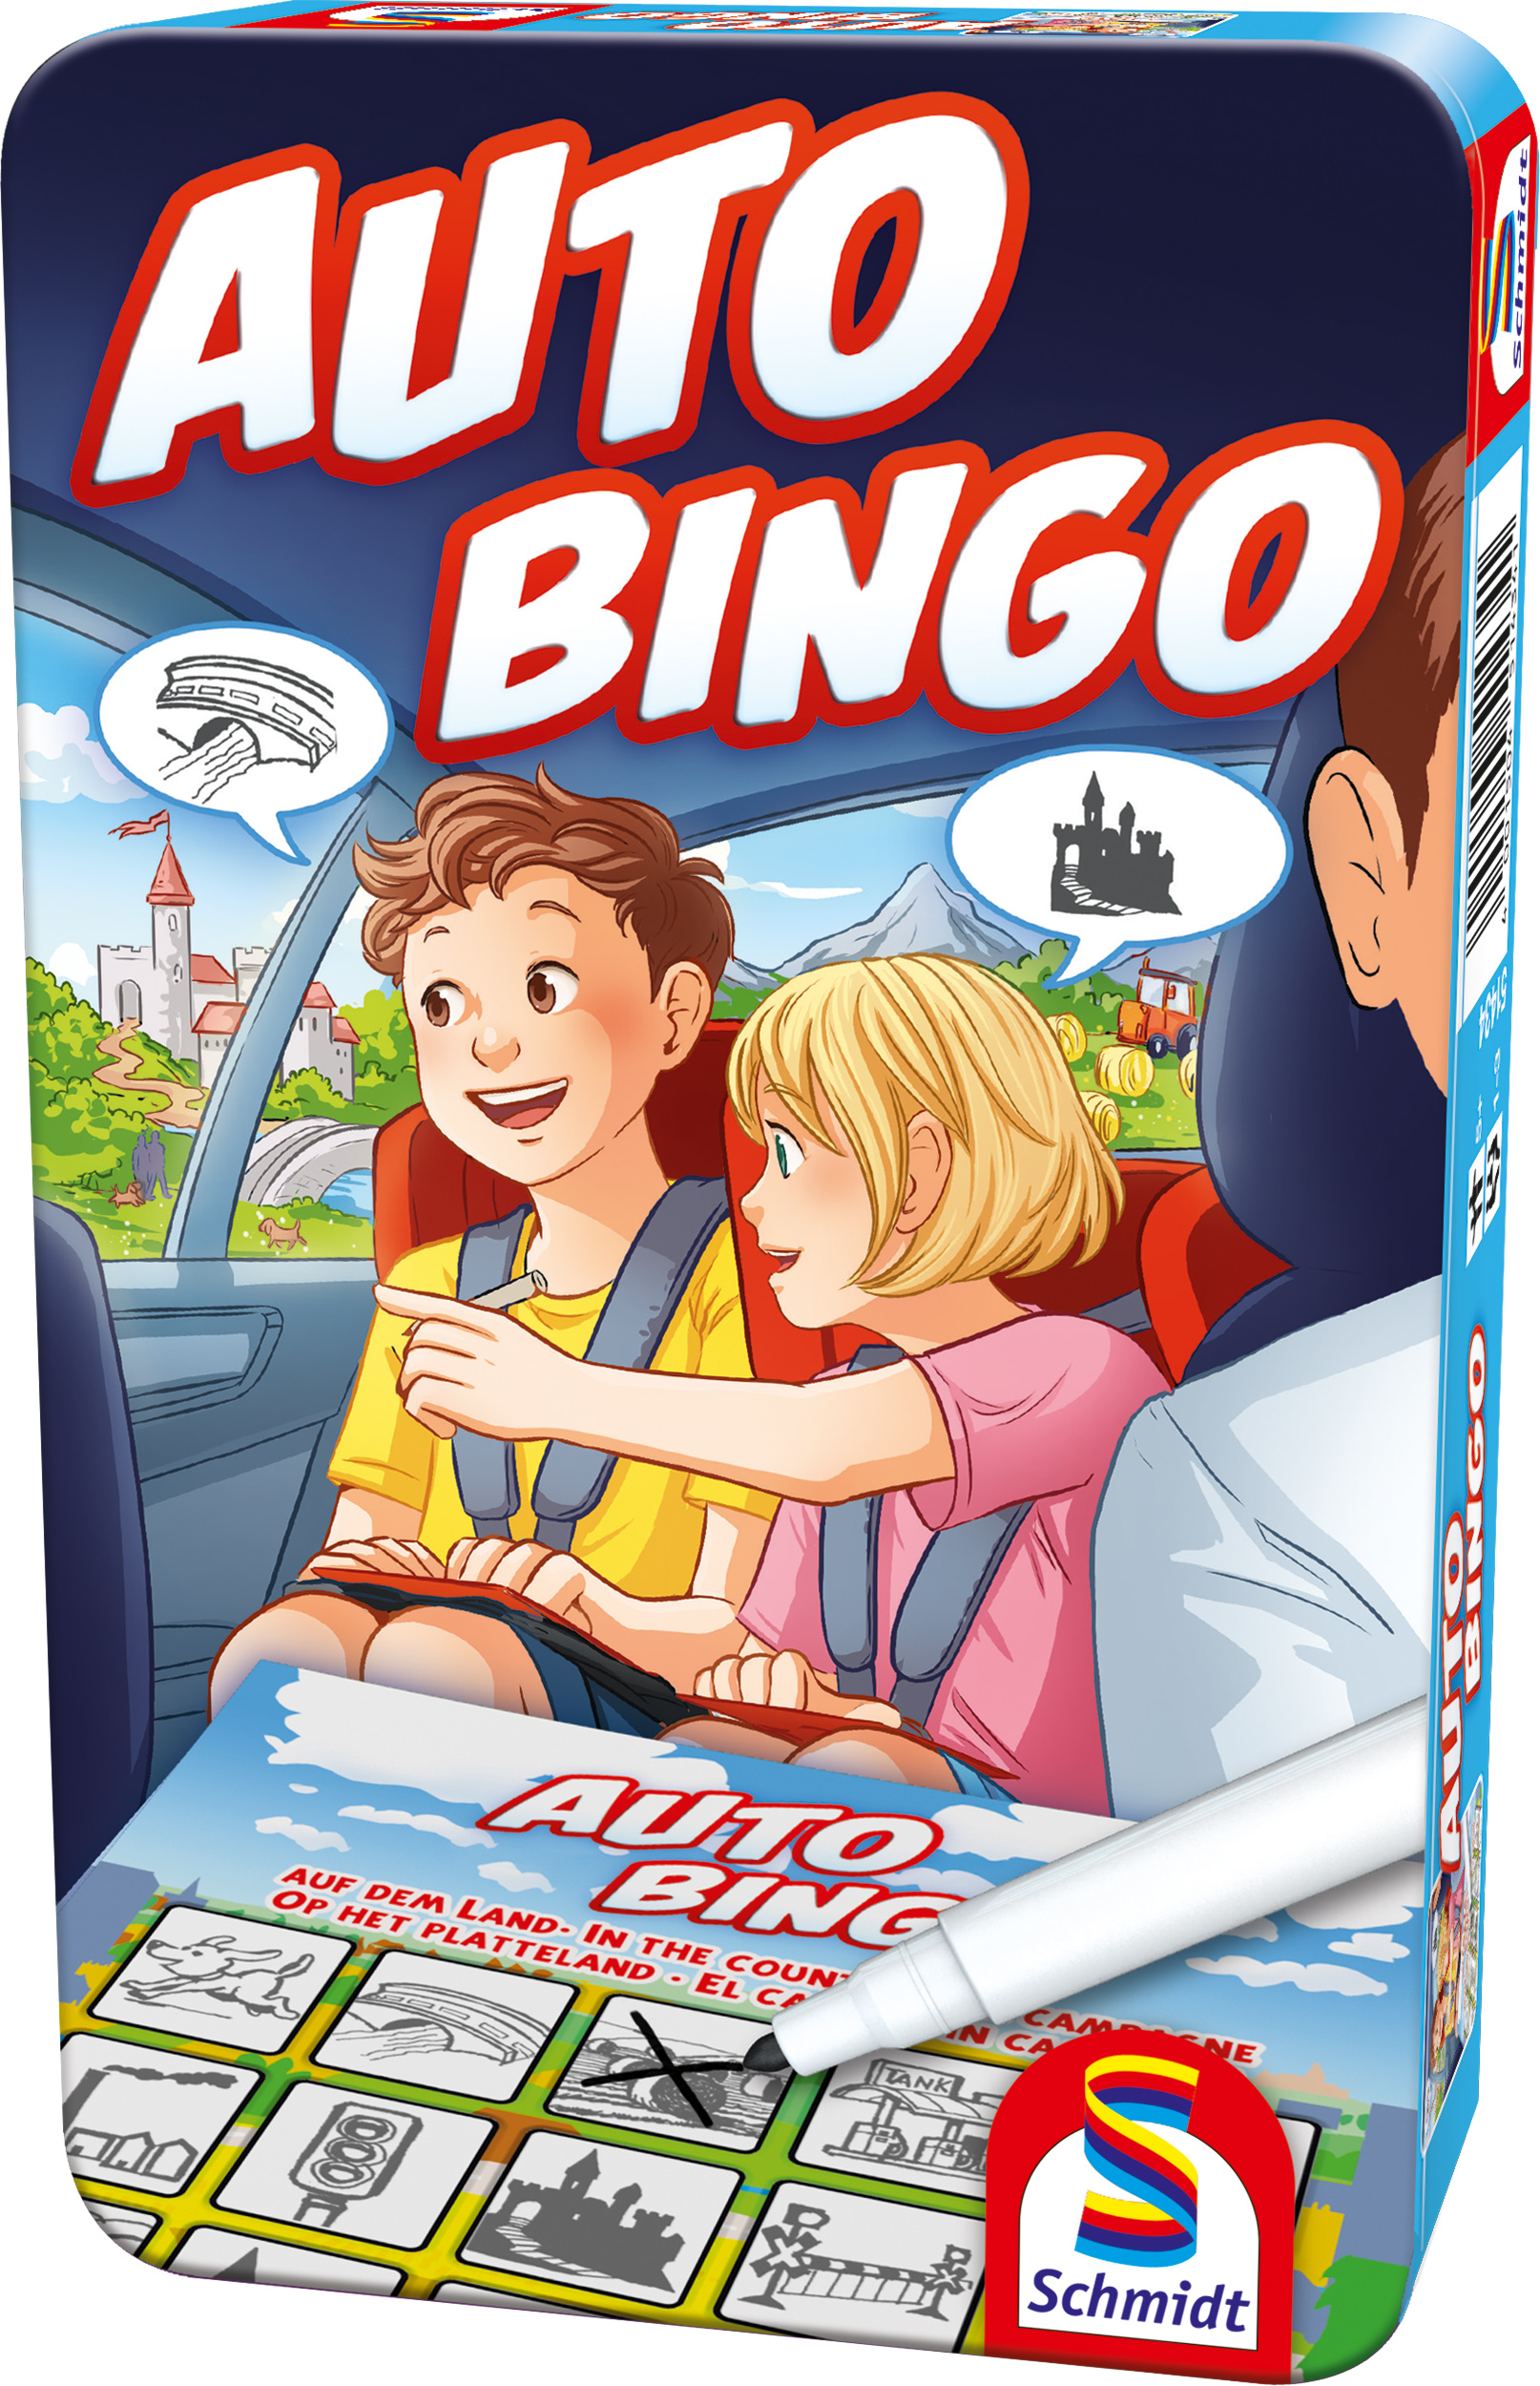 Bring-Mich-Mit-Spiel M-Auto-Bingo  - Metalldose Gesellschaftsspiel SPIELE nein in SCHMIDT